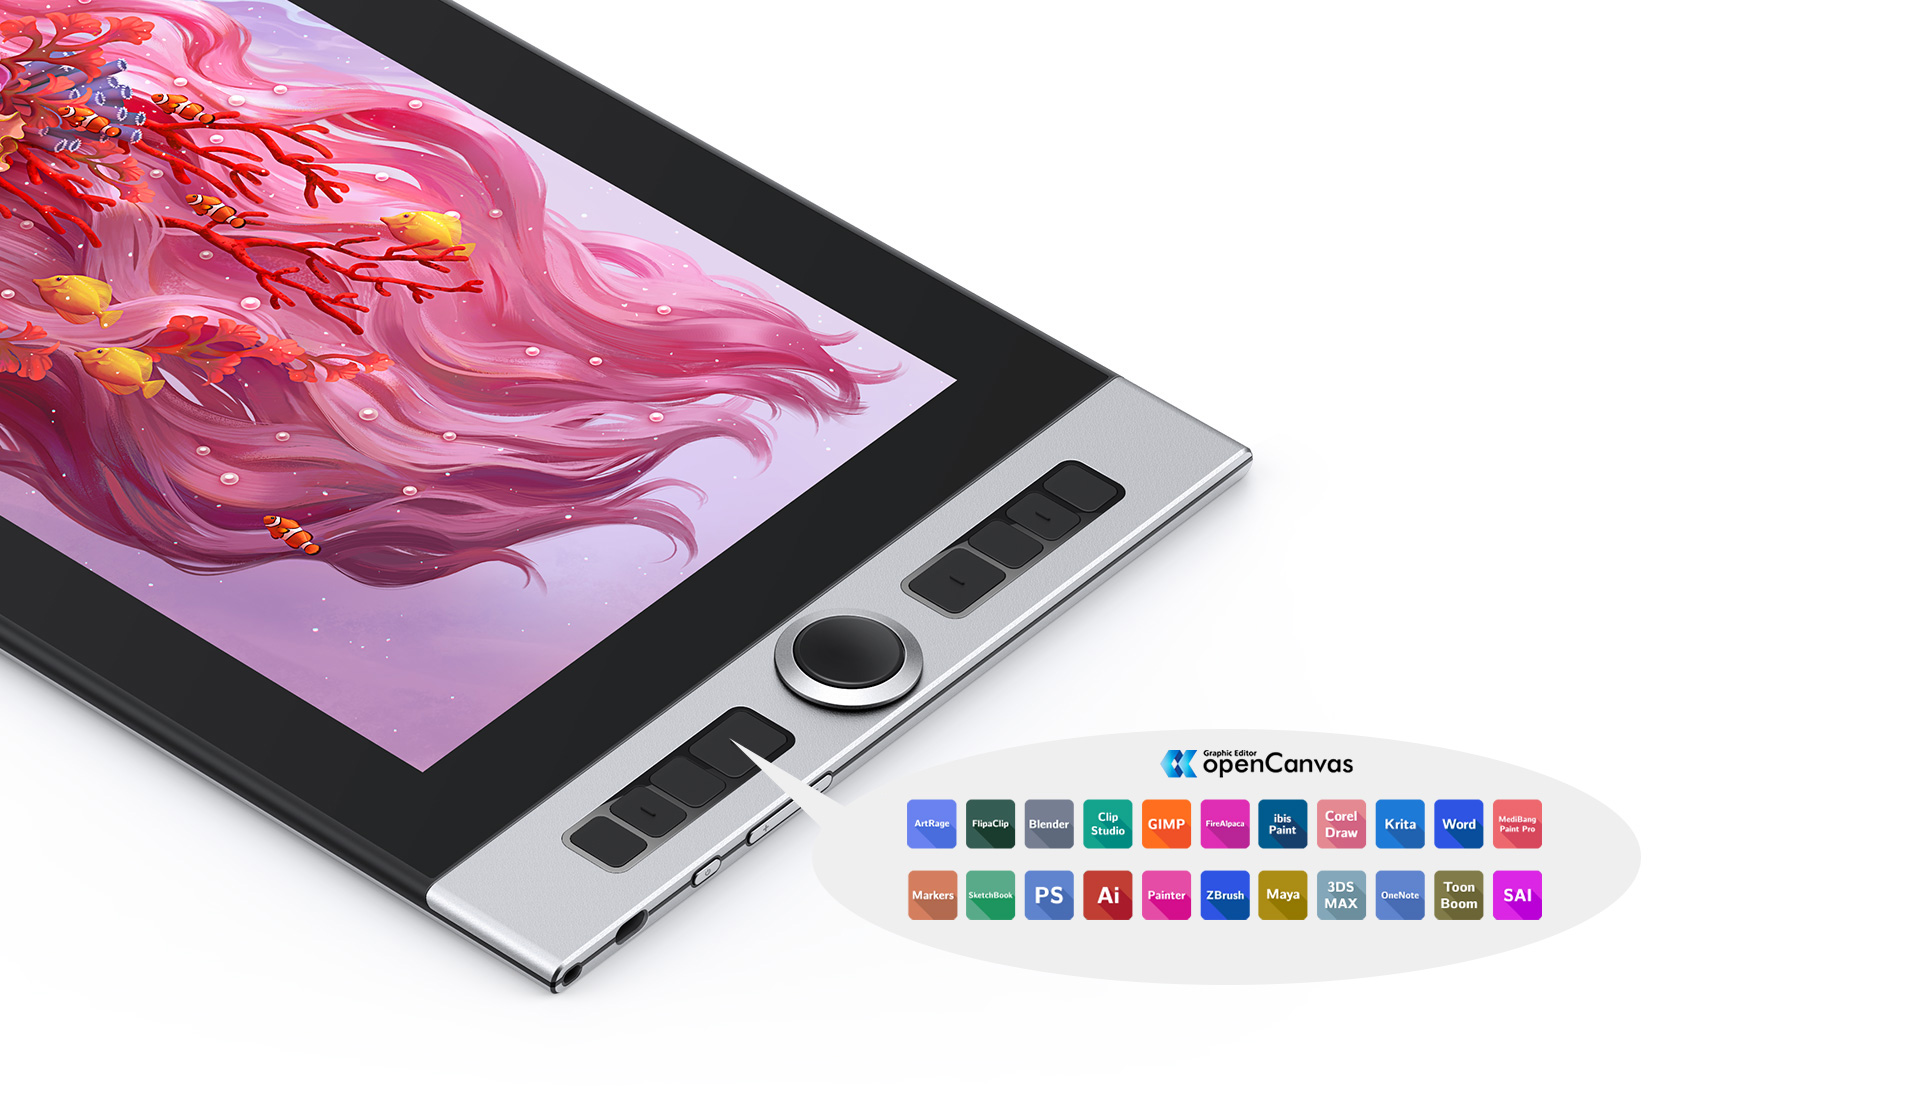 tela digitalizadora XP-Pen Innovator 16 Compatível com a maioria dos sistemas operacionais e aplicativos